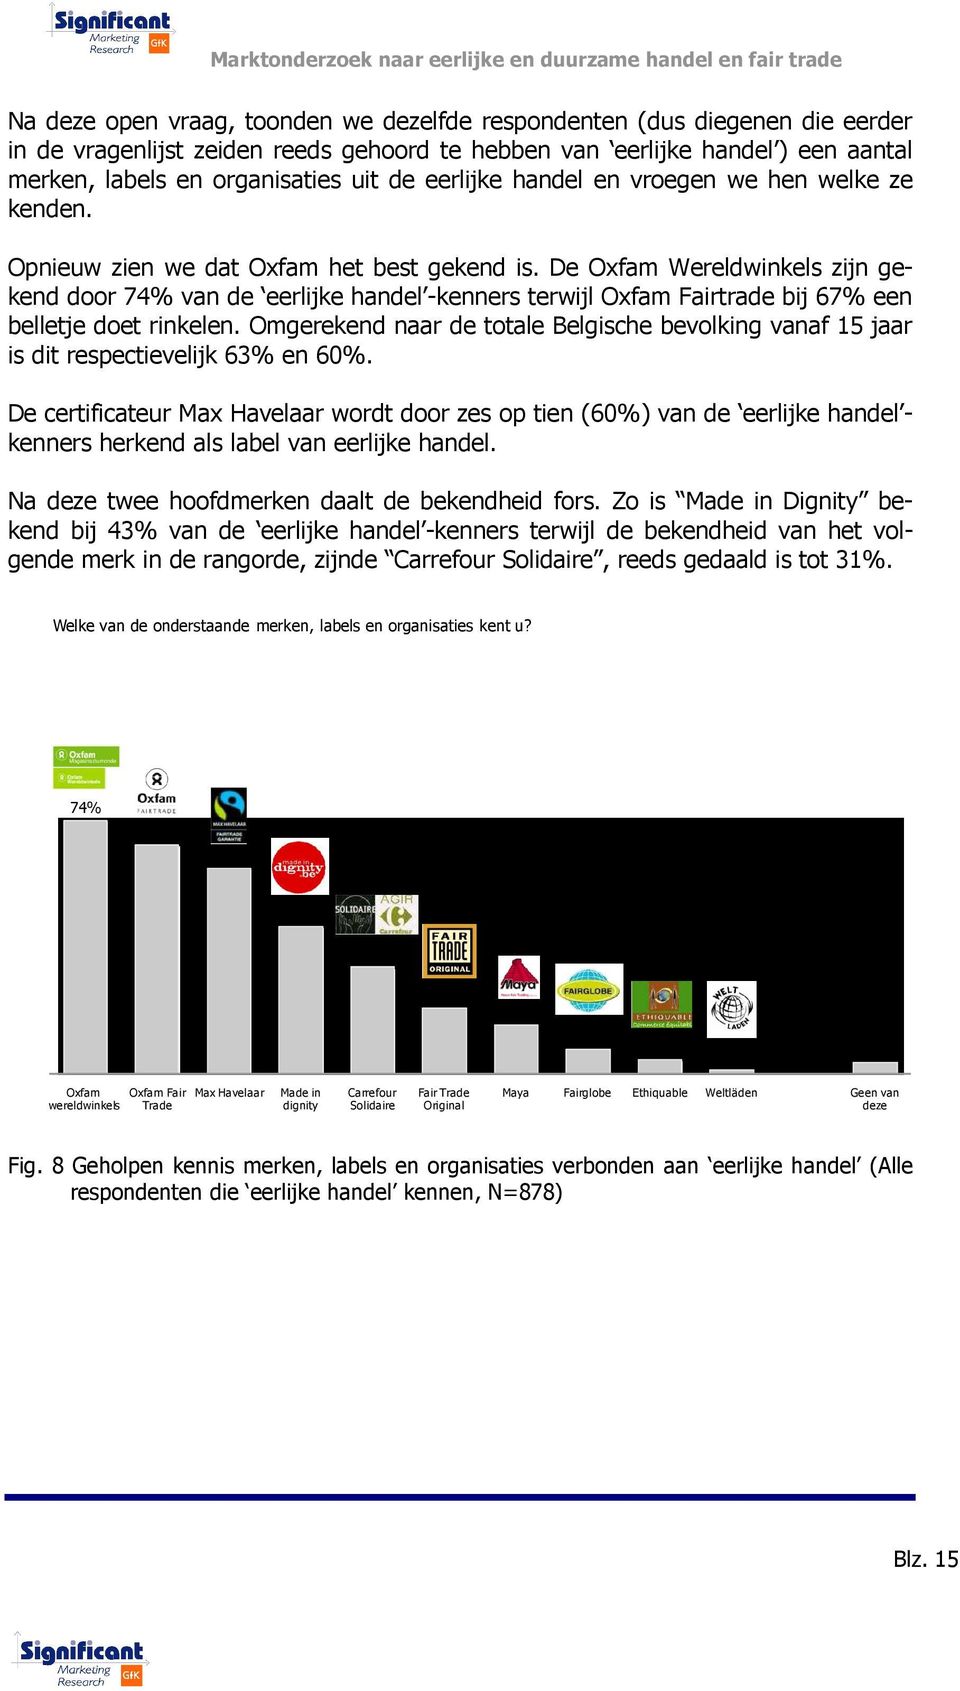 De Oxfam Wereldwinkels zijn gekend door 74% van de eerlijke handel -kenners terwijl Oxfam Fairtrade bij 67% een belletje doet rinkelen.